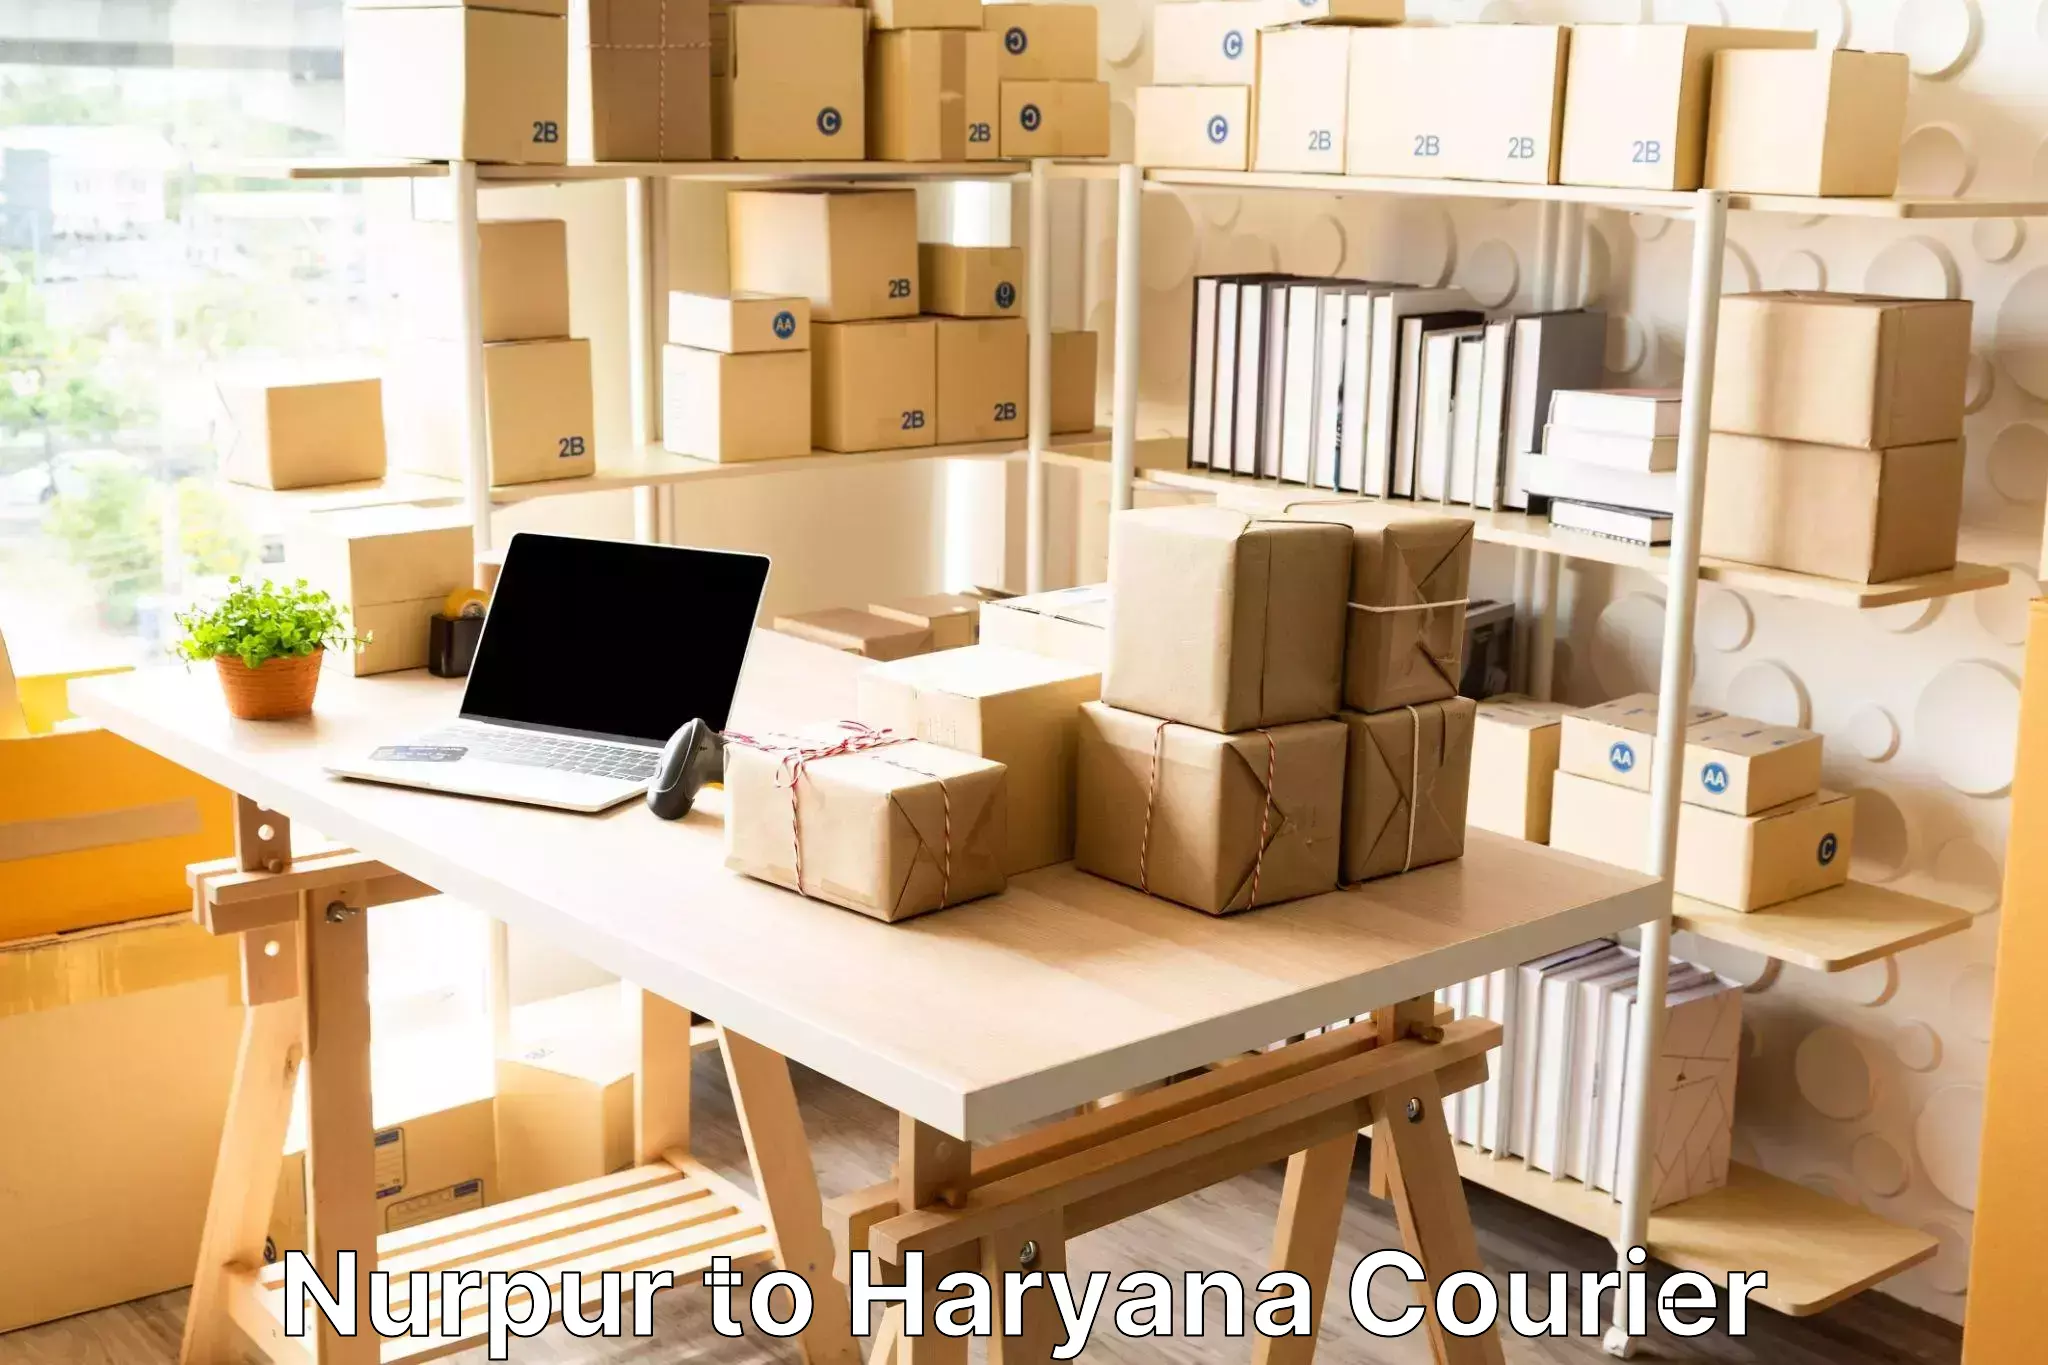 Luggage dispatch service Nurpur to Haryana